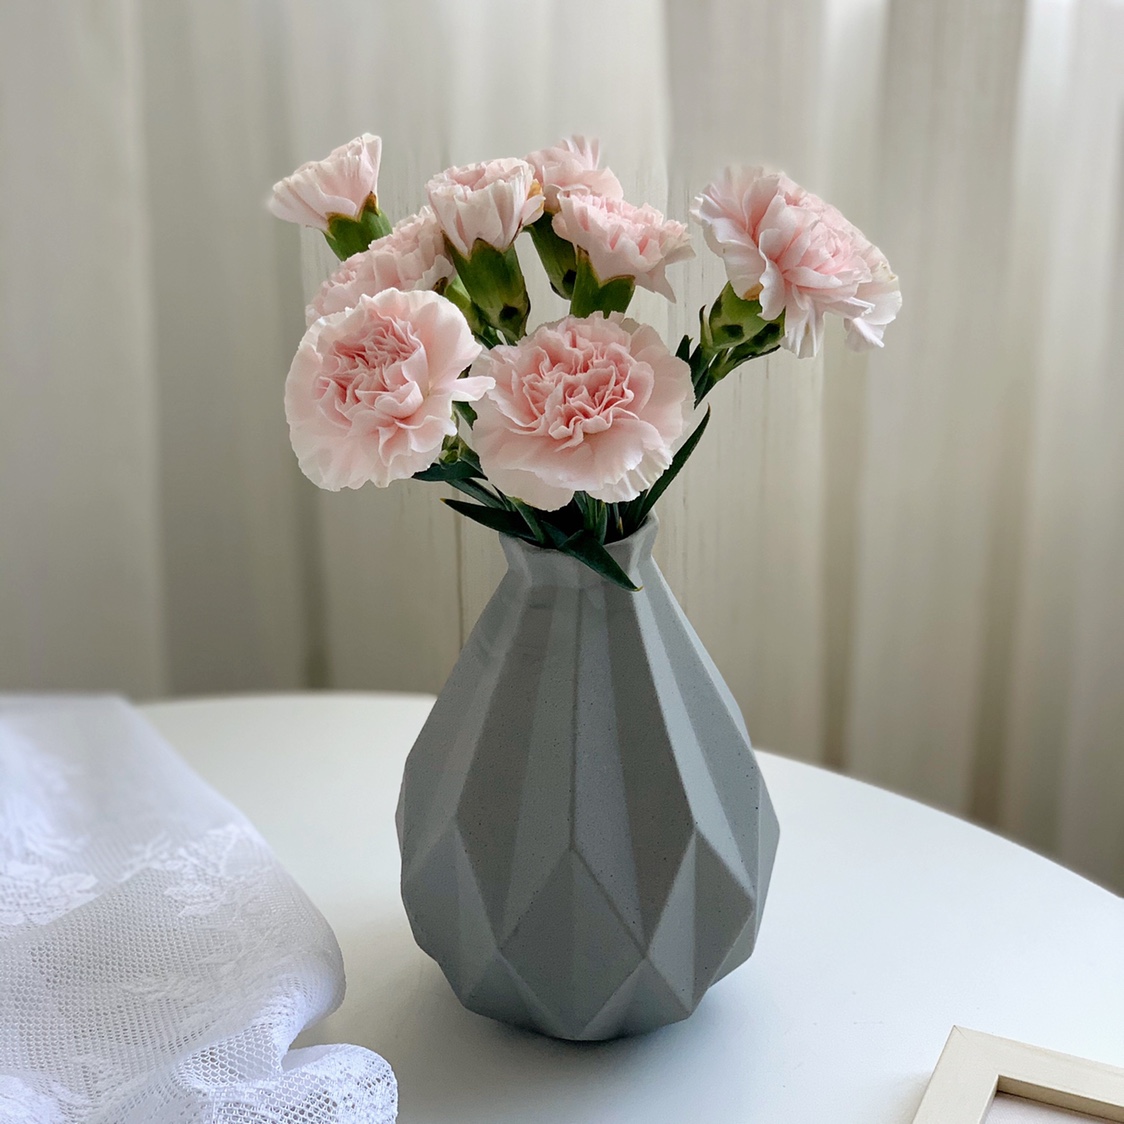 高级亚光灰 磨砂质感钻石切割折纸形状陶瓷花瓶 桌面客厅花瓶